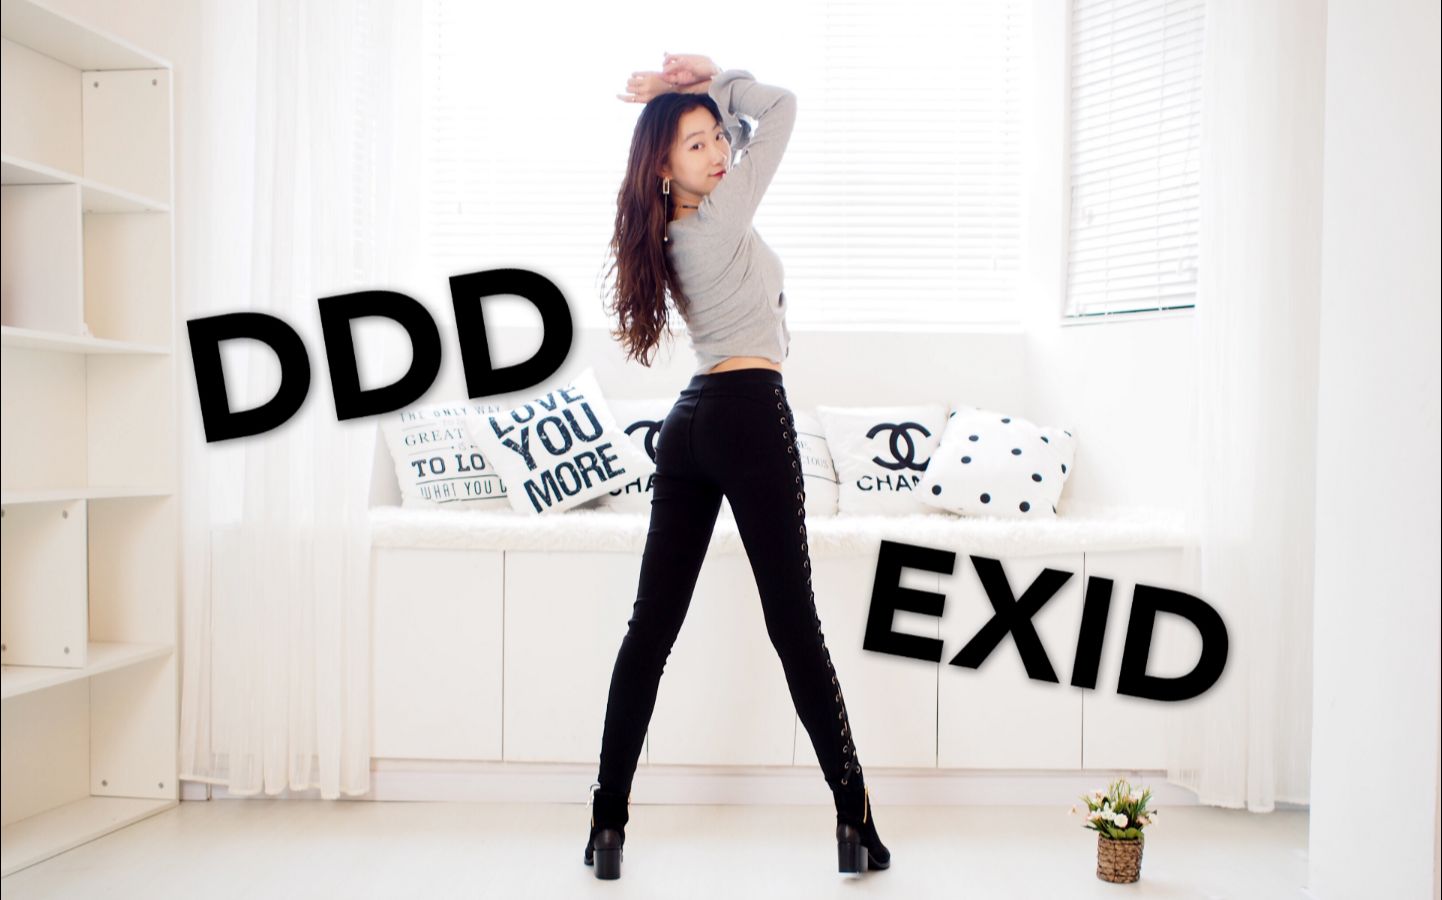 【郡主】EXID-DDD抖抖抖 Dance Cover